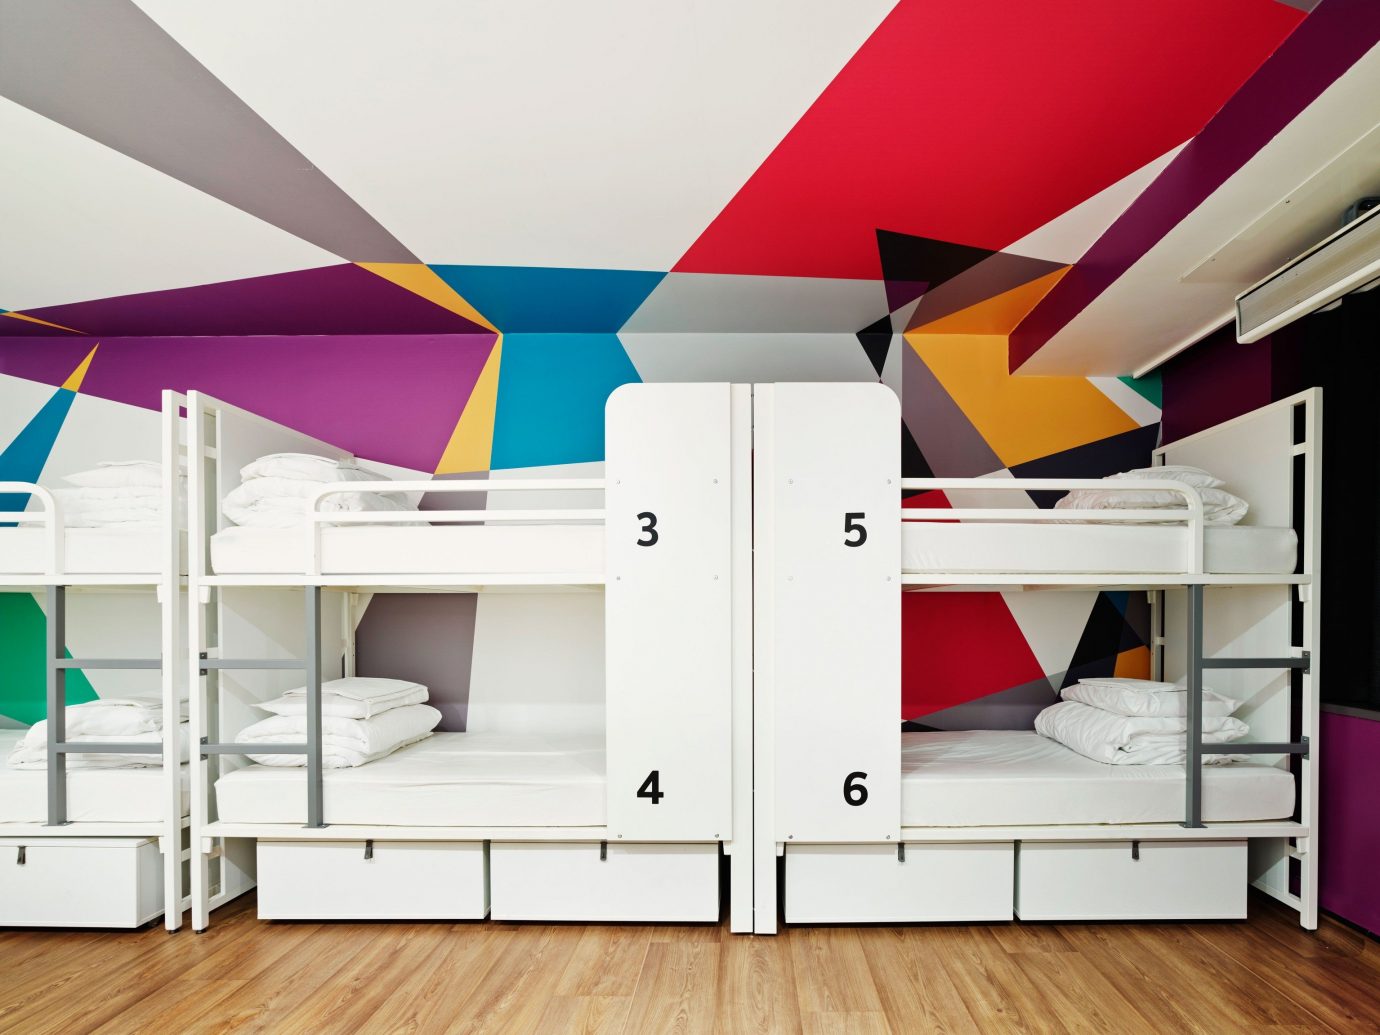 Offbeat floor indoor furniture room interior design bed bunk bed Design ceiling wardrobe